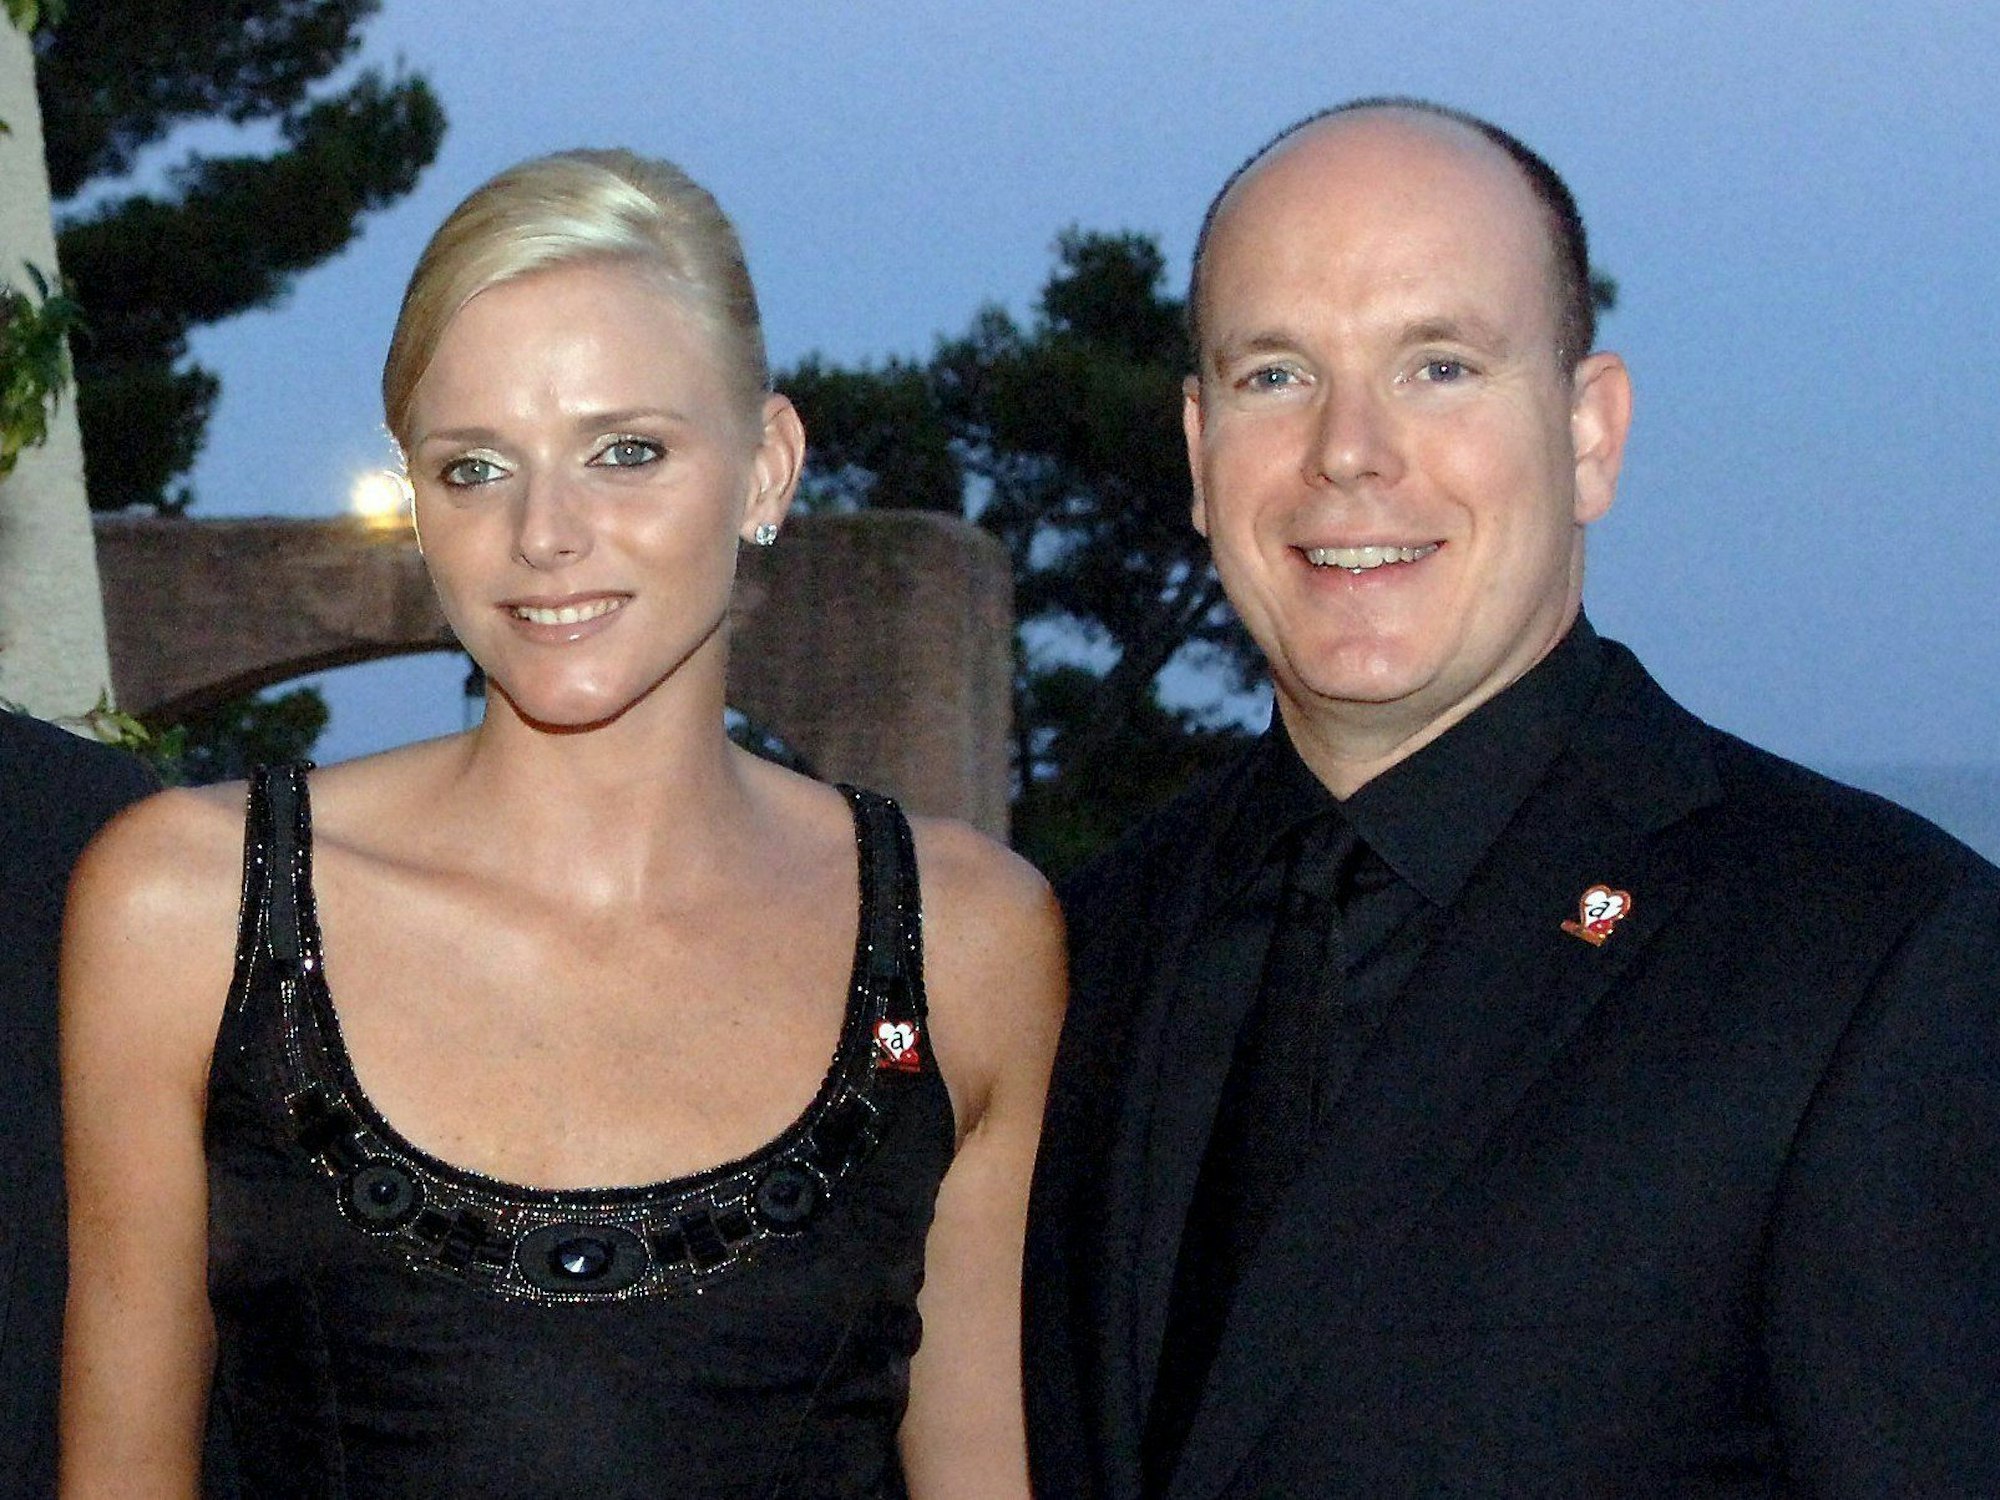 Fürst Albert II. von Monaco und Charlene Wittstock posieren.